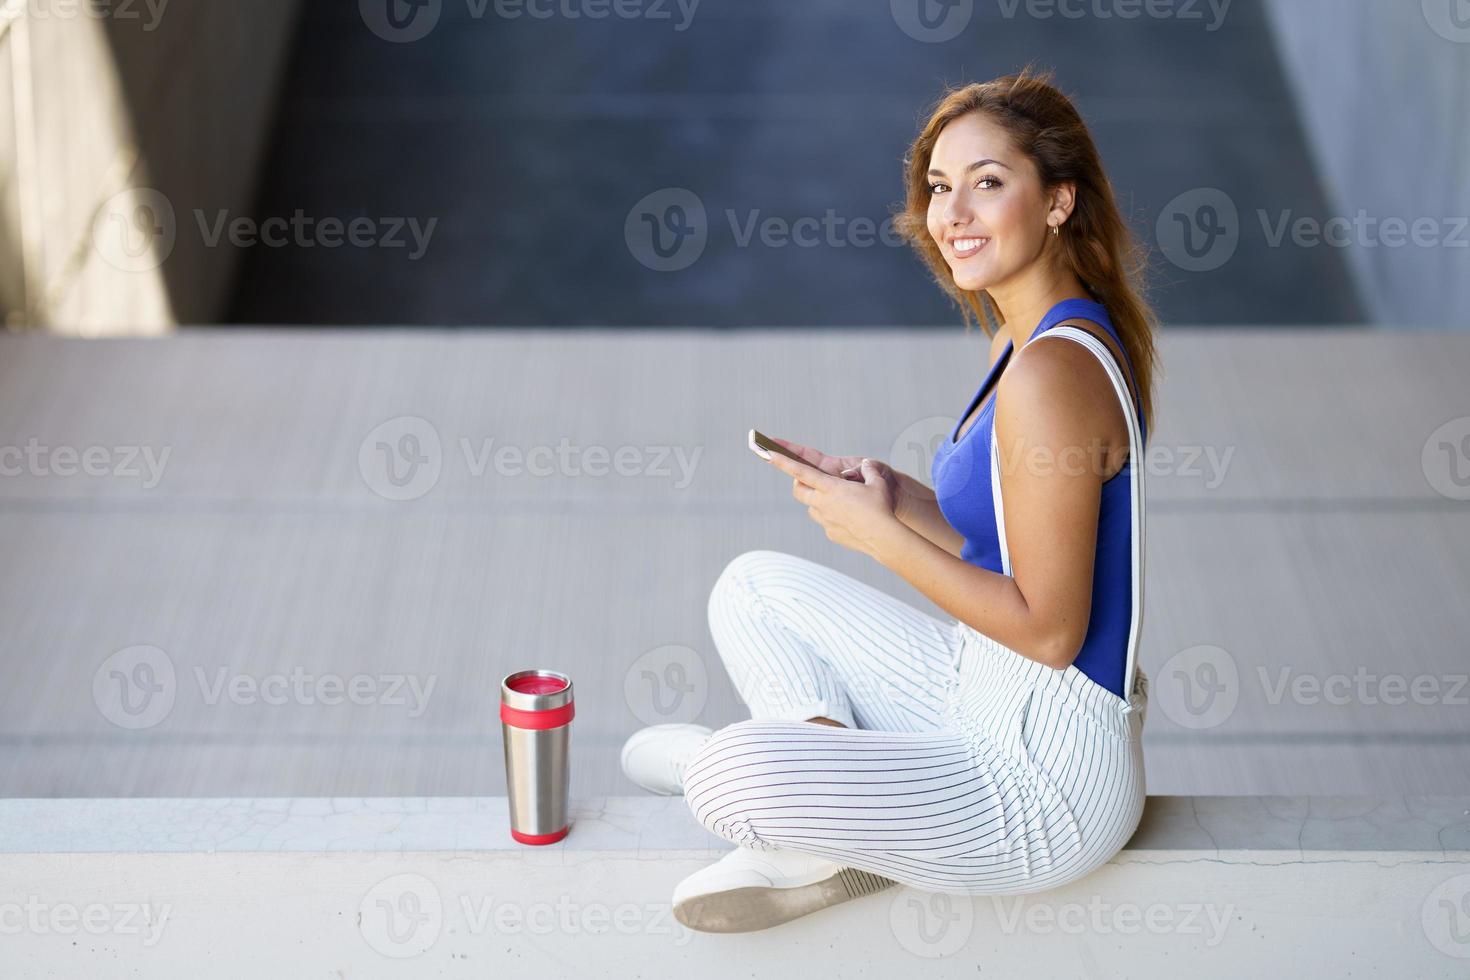 garota usando um smartphone touchscreen com roupas casuais foto